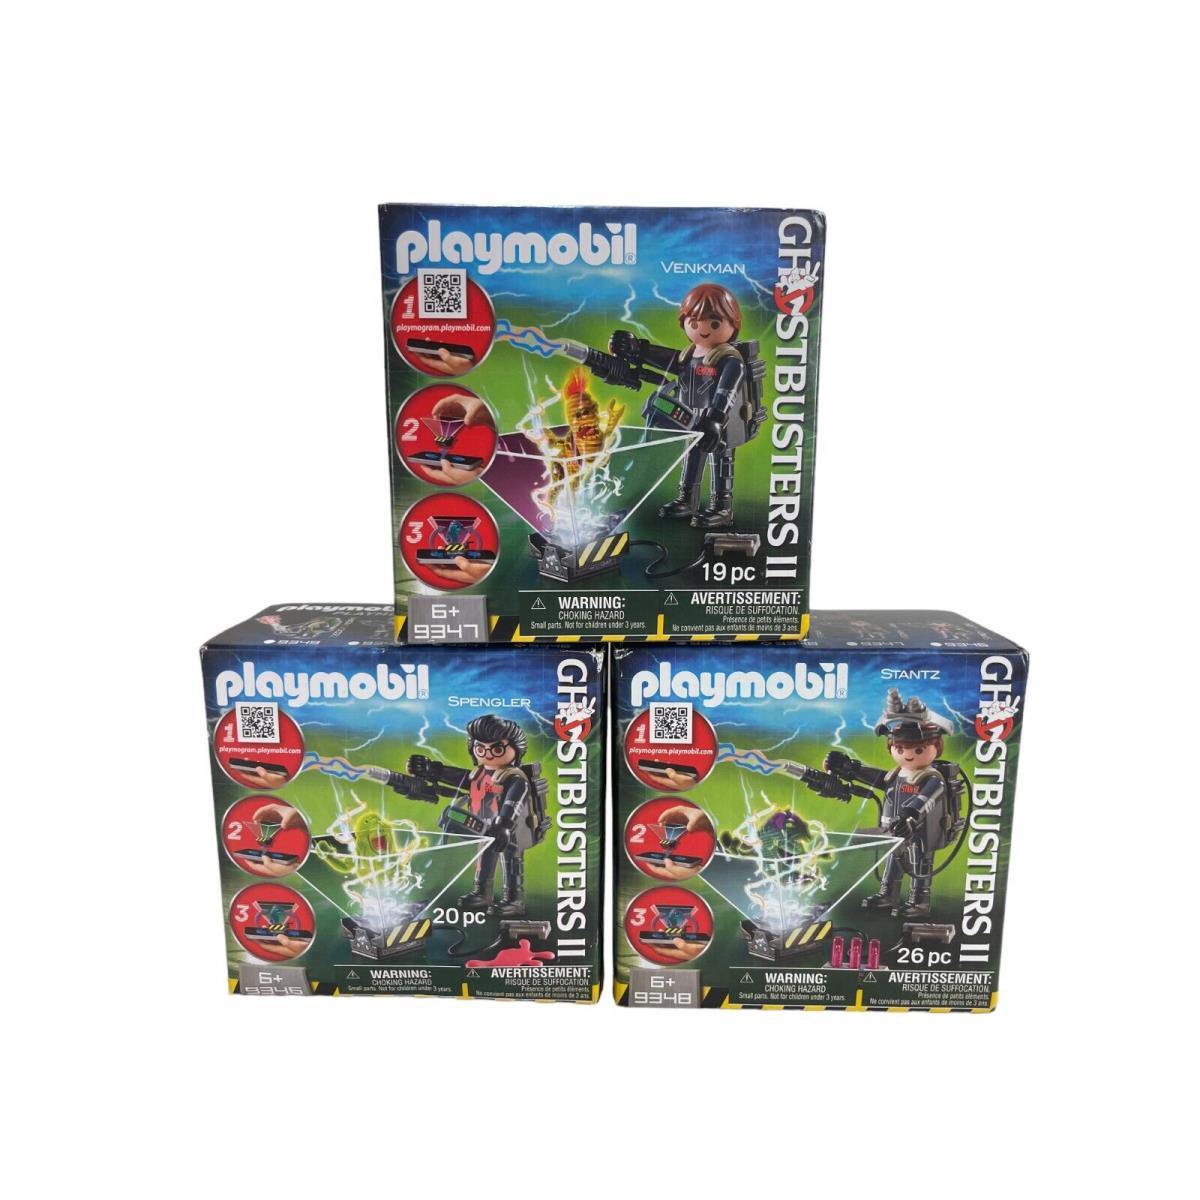 Playmobil Ghostbusters 2 Figures All 3 Vienkman Spengler Stantz